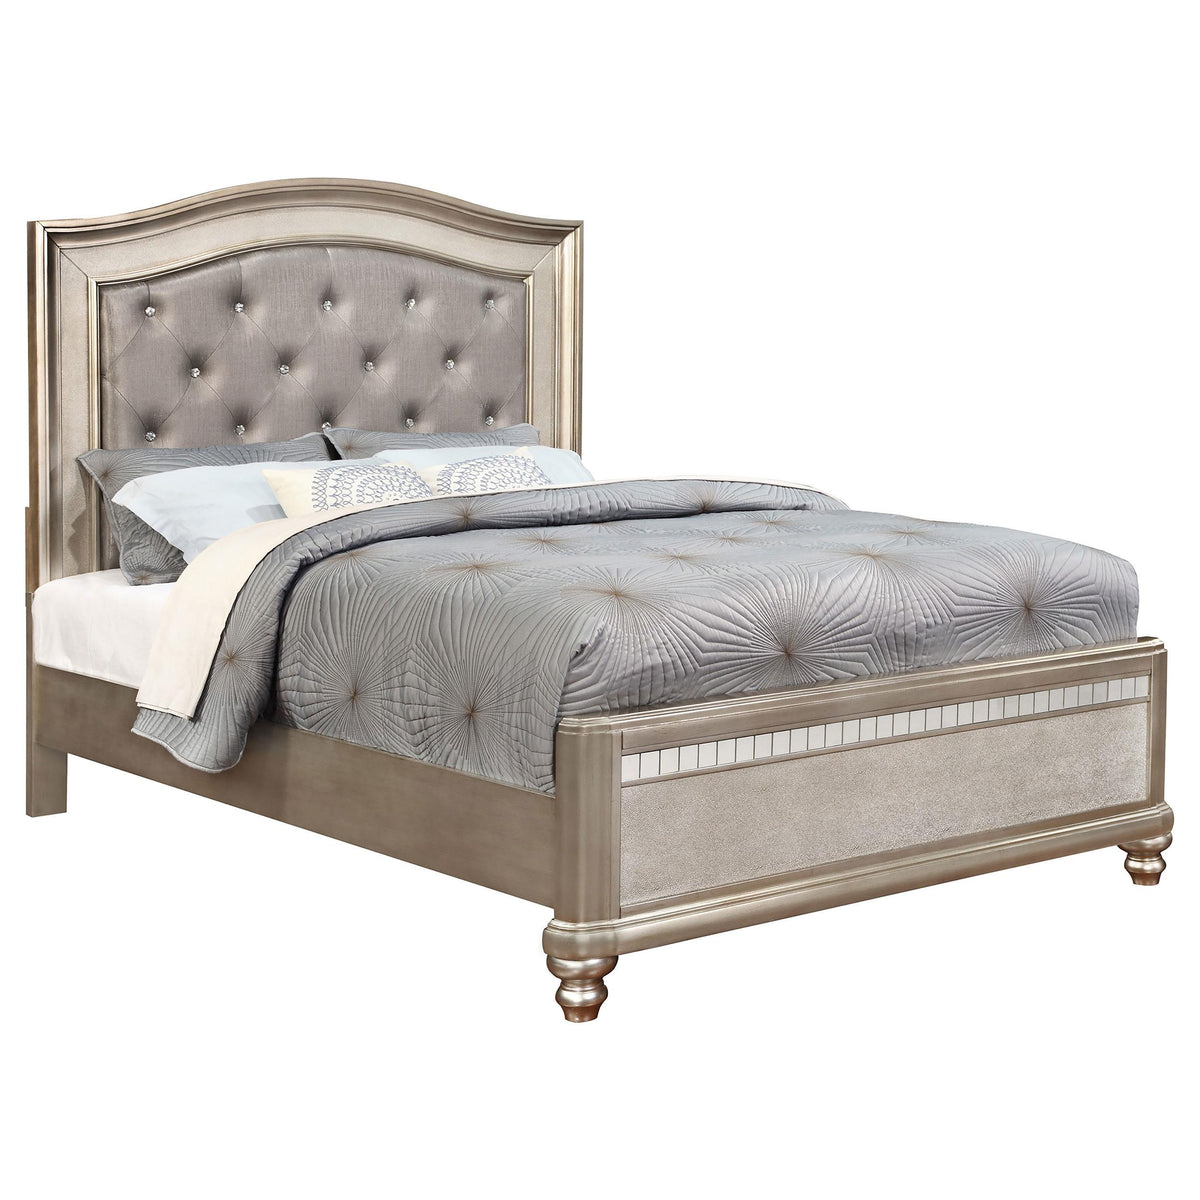 Bling Game California King Panel Bed Metallic Platinum  Half Price Furniture